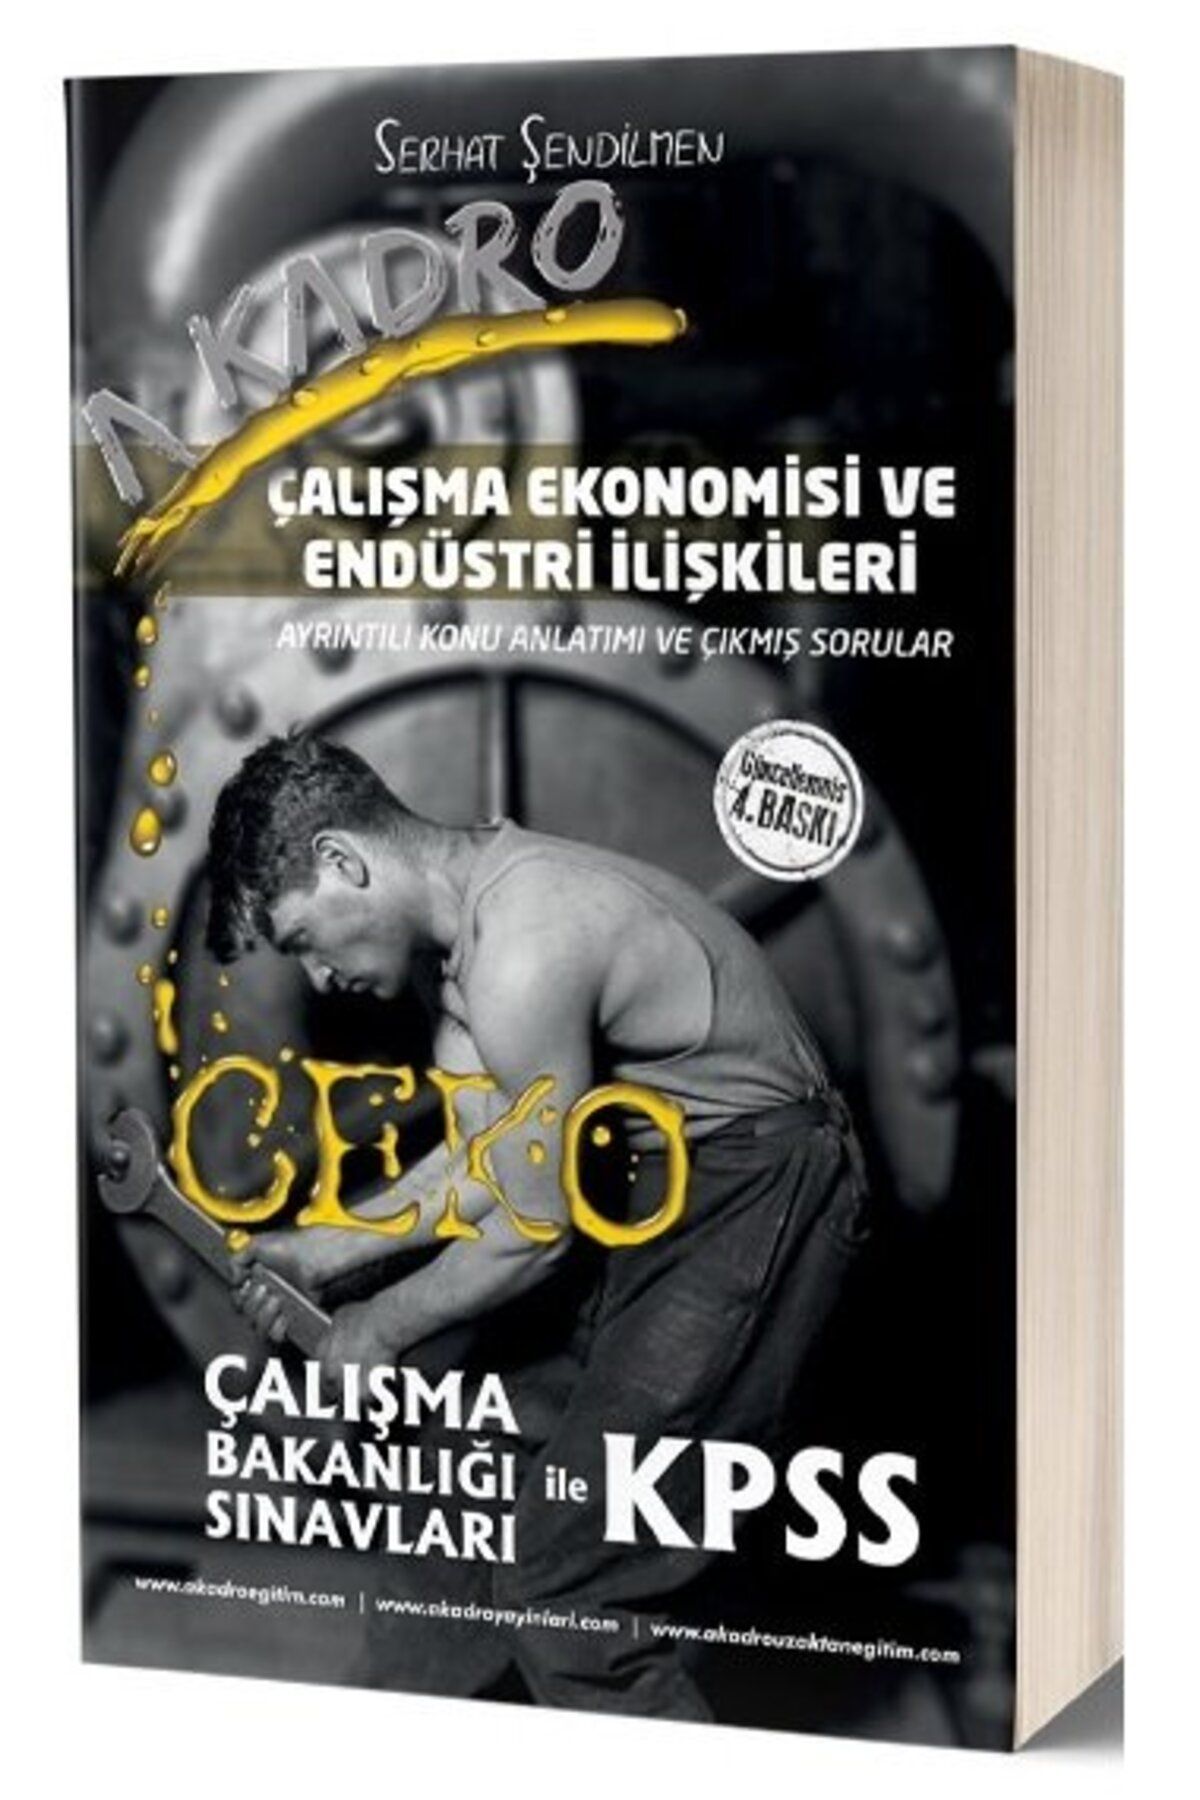 A Kadro Yayınları A Kadro Kpss A Grubu Çeko Çalışma Ekonomisi Endüstri Ilişkileri Konu Anlatımlı 4. Baskı - Serhat Şen